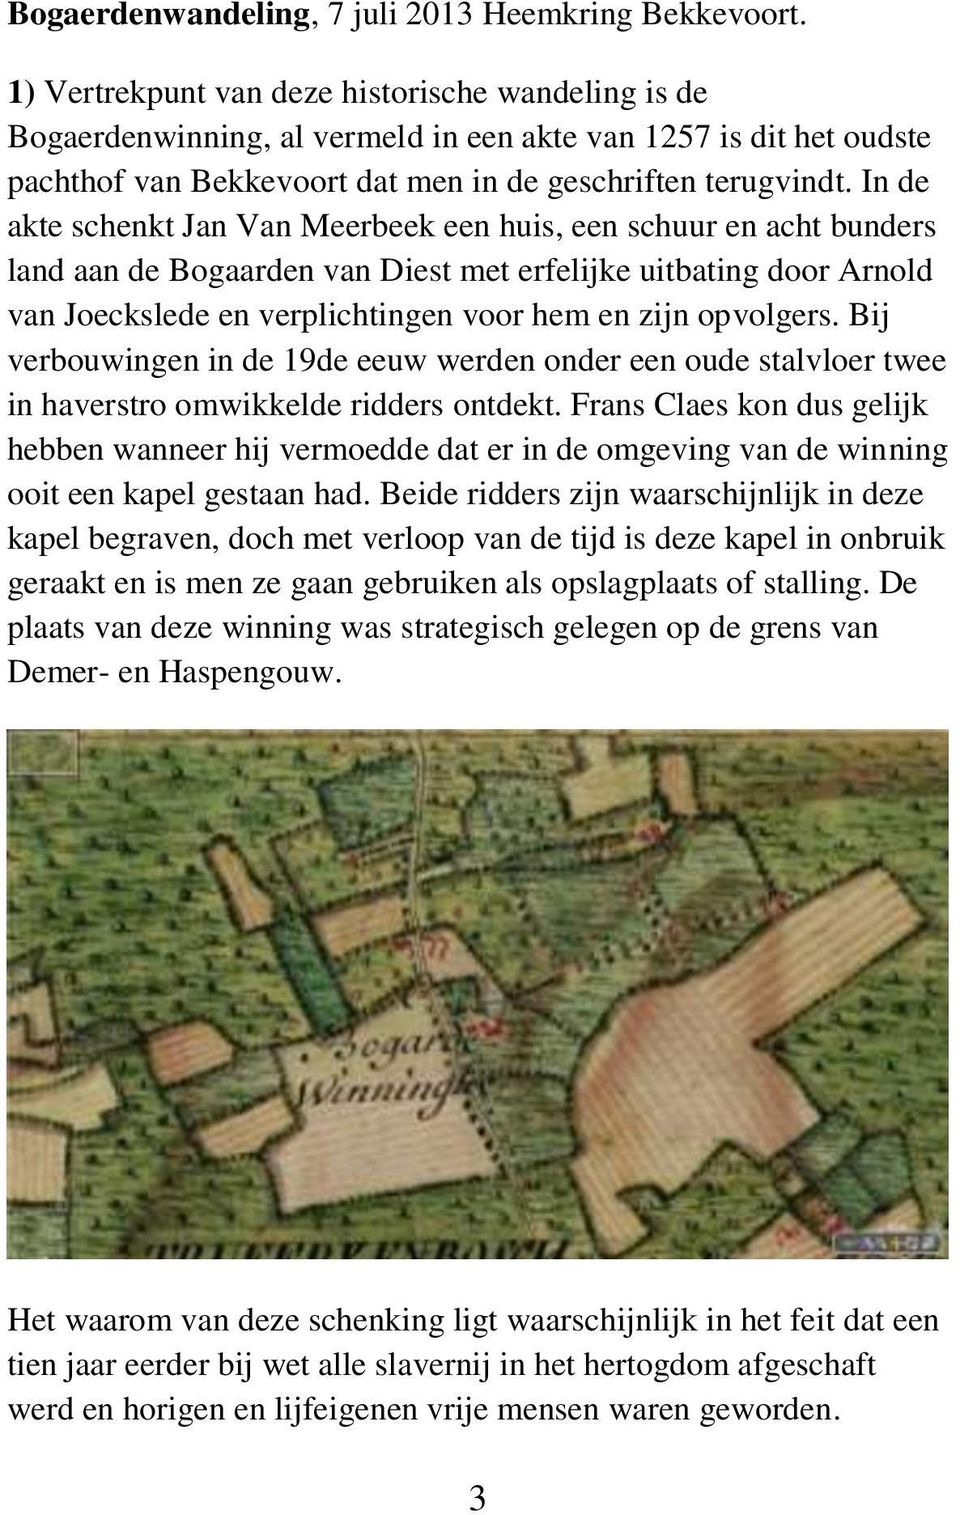 In de akte schenkt Jan Van Meerbeek een huis, een schuur en acht bunders land aan de Bogaarden van Diest met erfelijke uitbating door Arnold van Joeckslede en verplichtingen voor hem en zijn